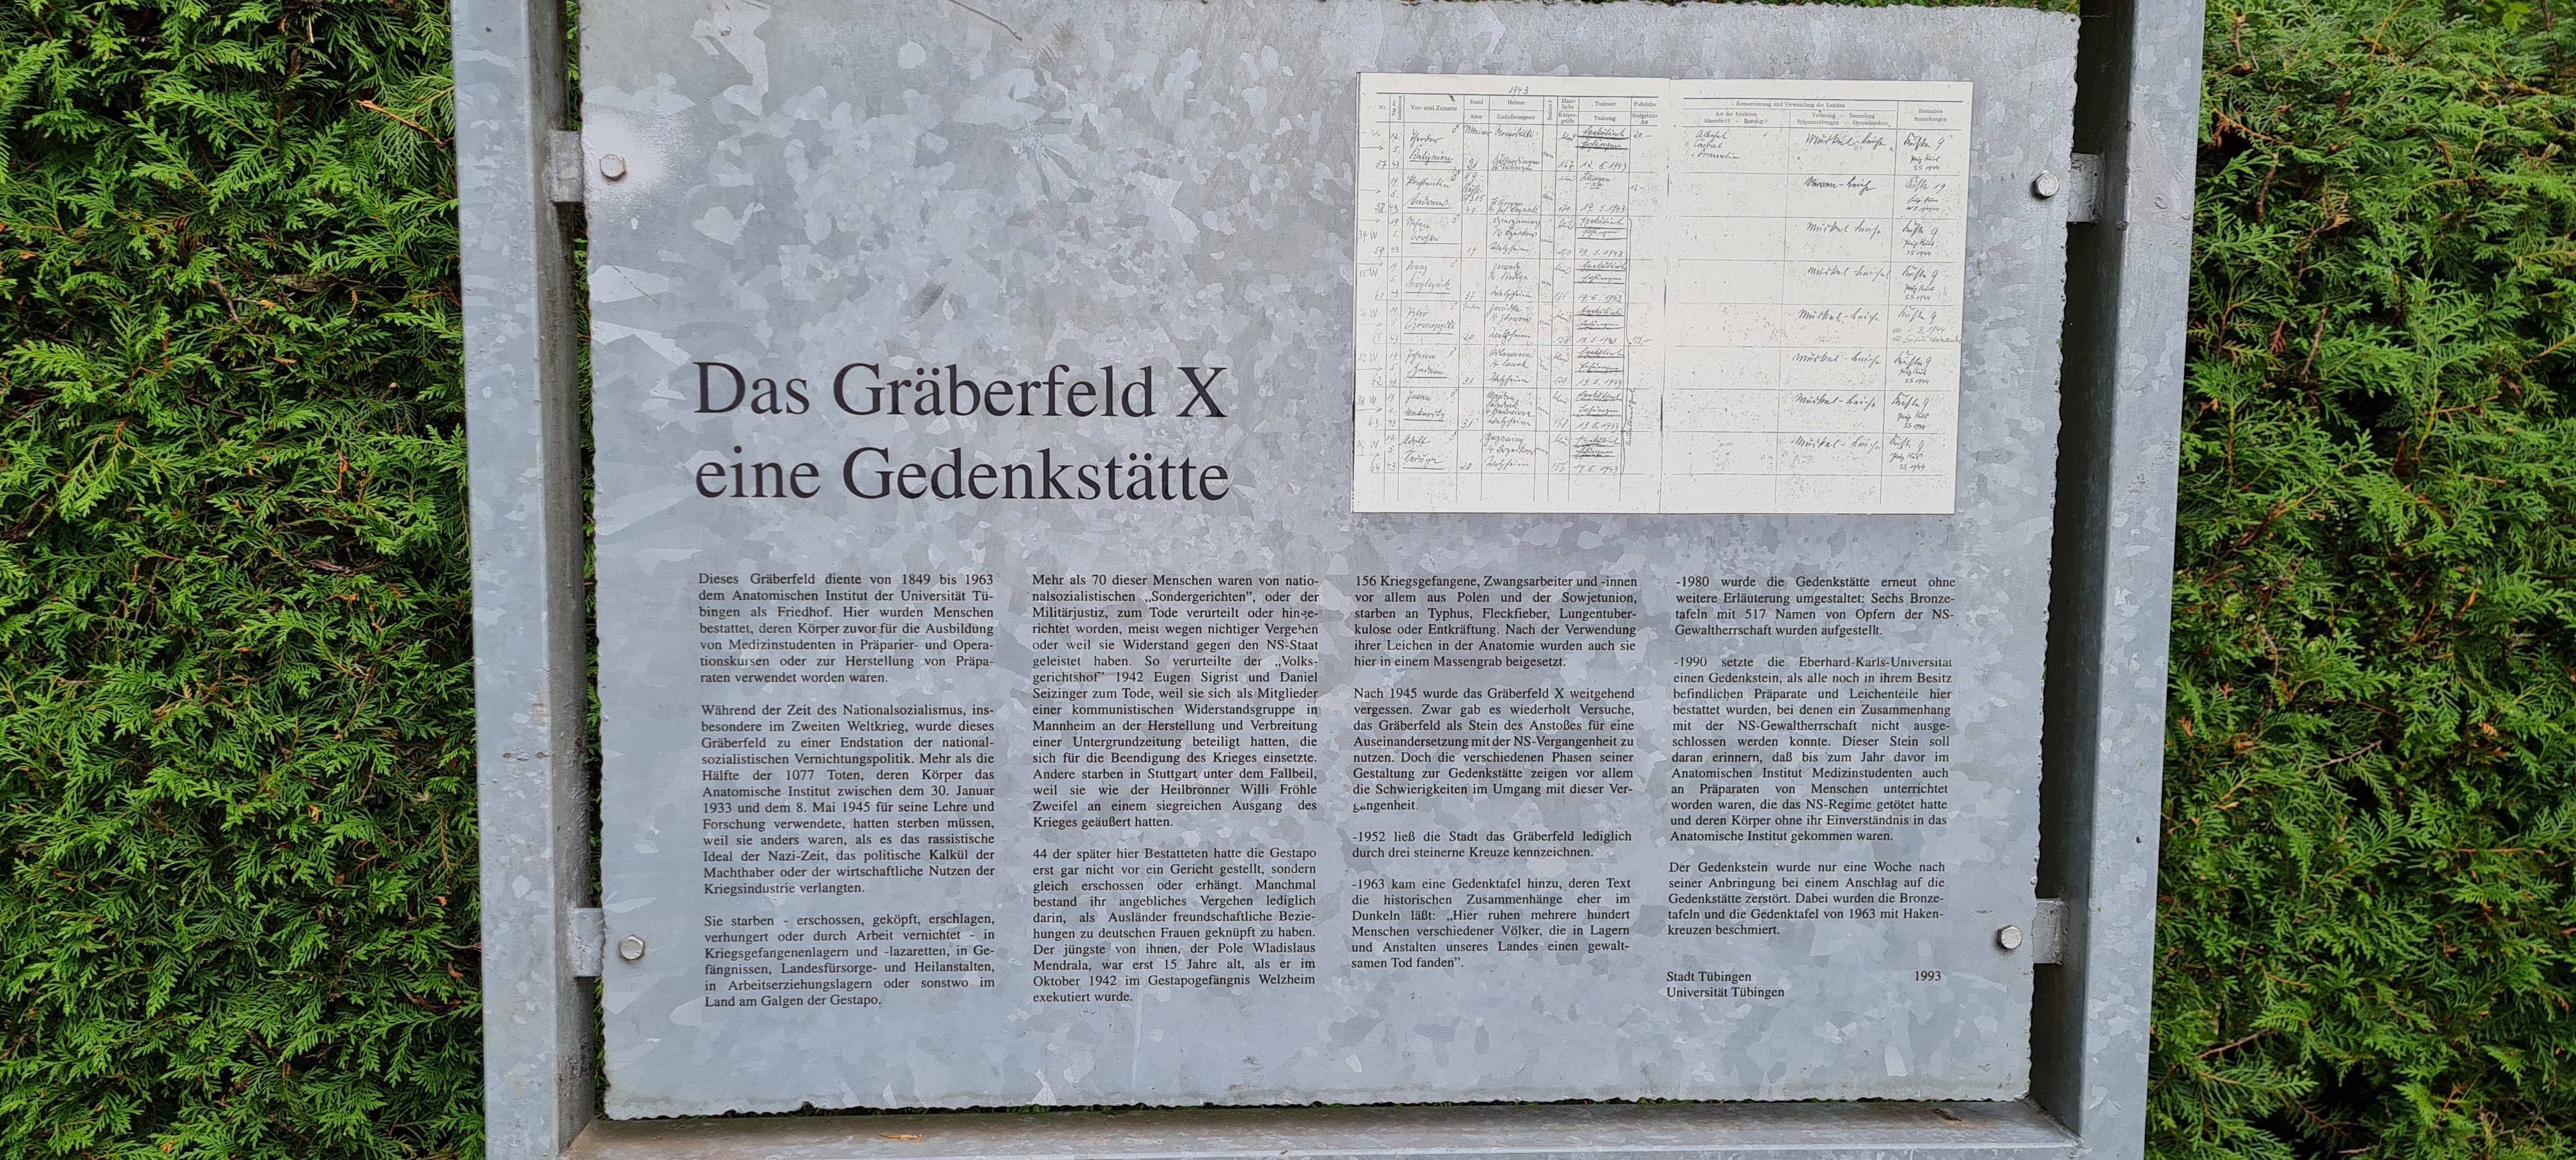 Infotafel zur Gedenkstätte Gräberfeld X